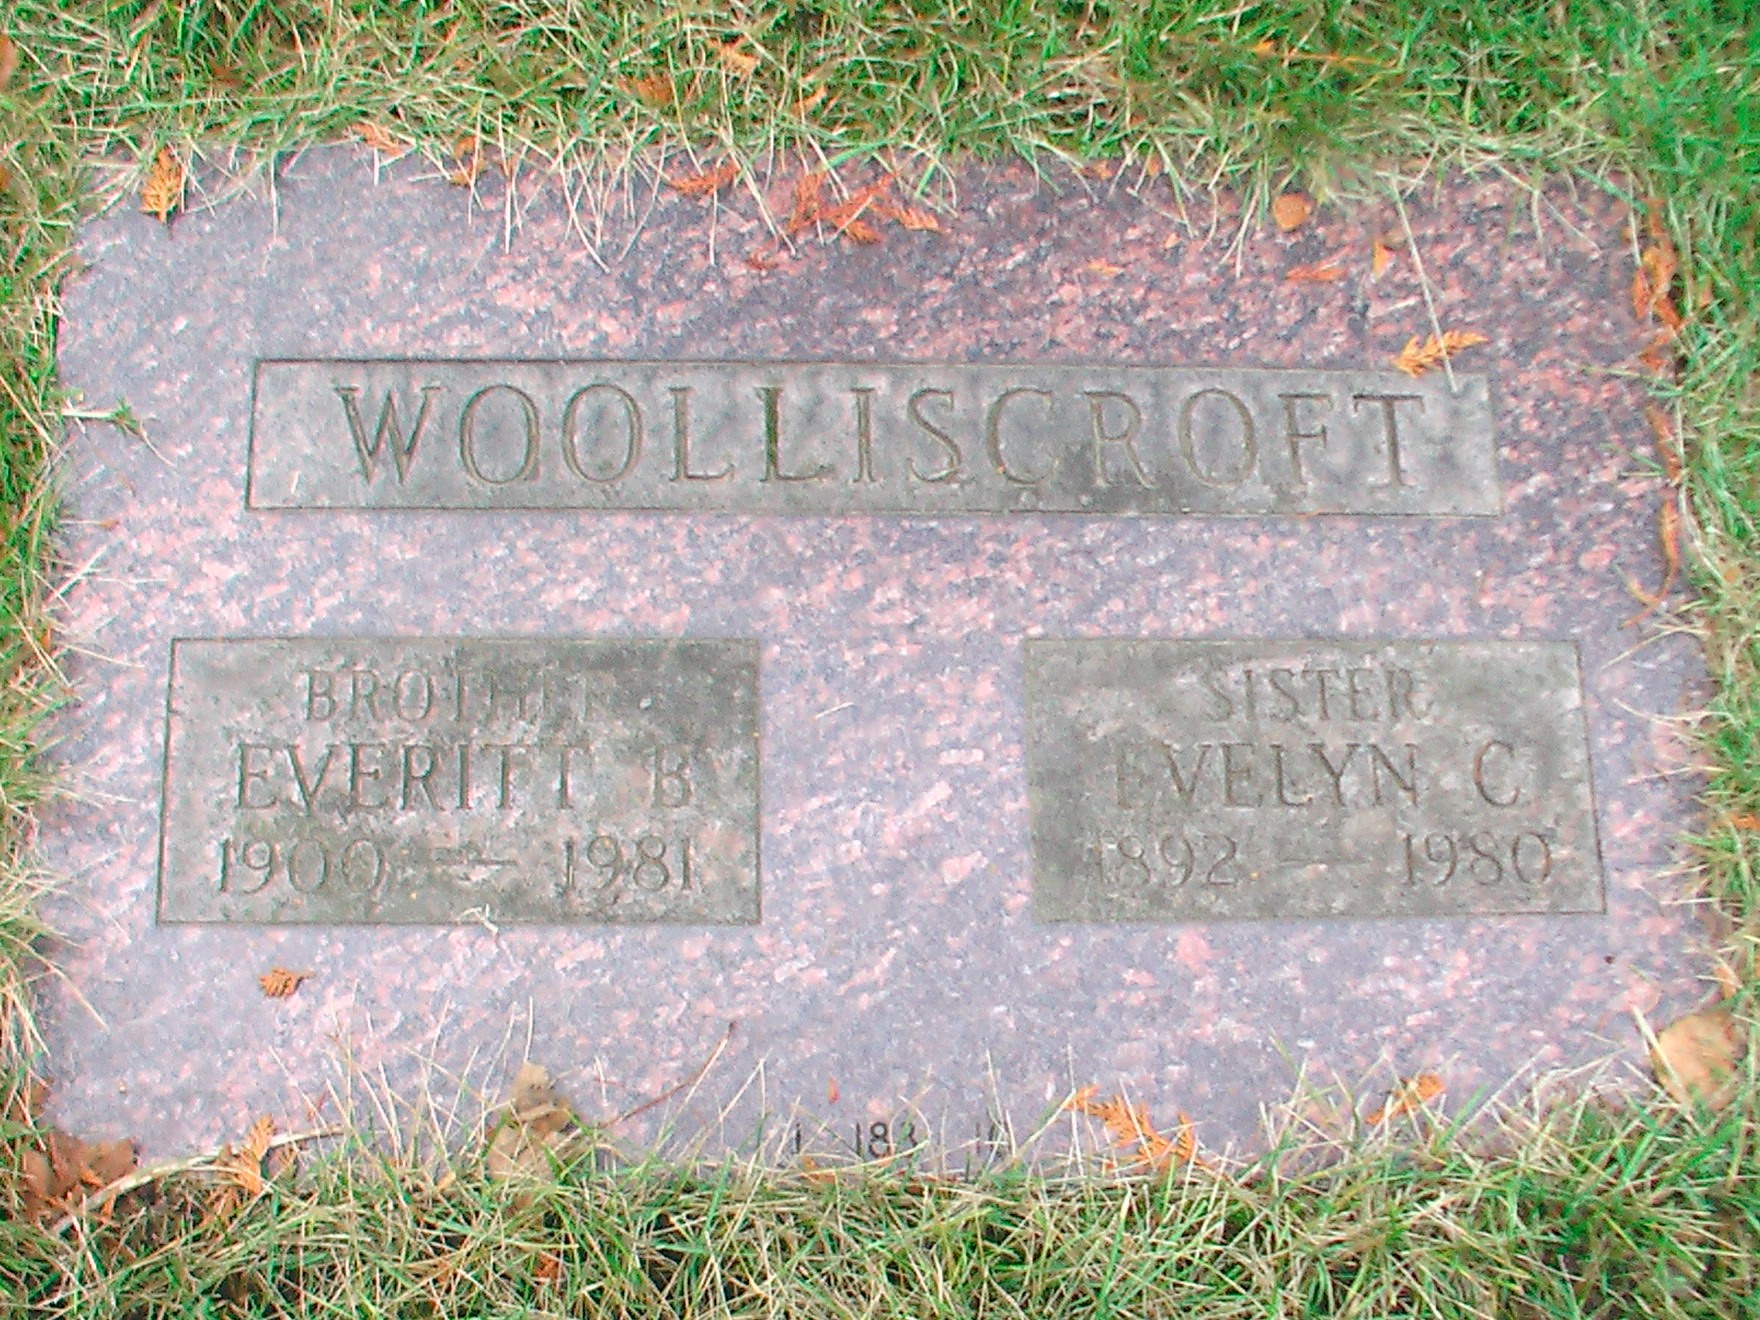 Everitt B and Evelyn C Woolliscroft